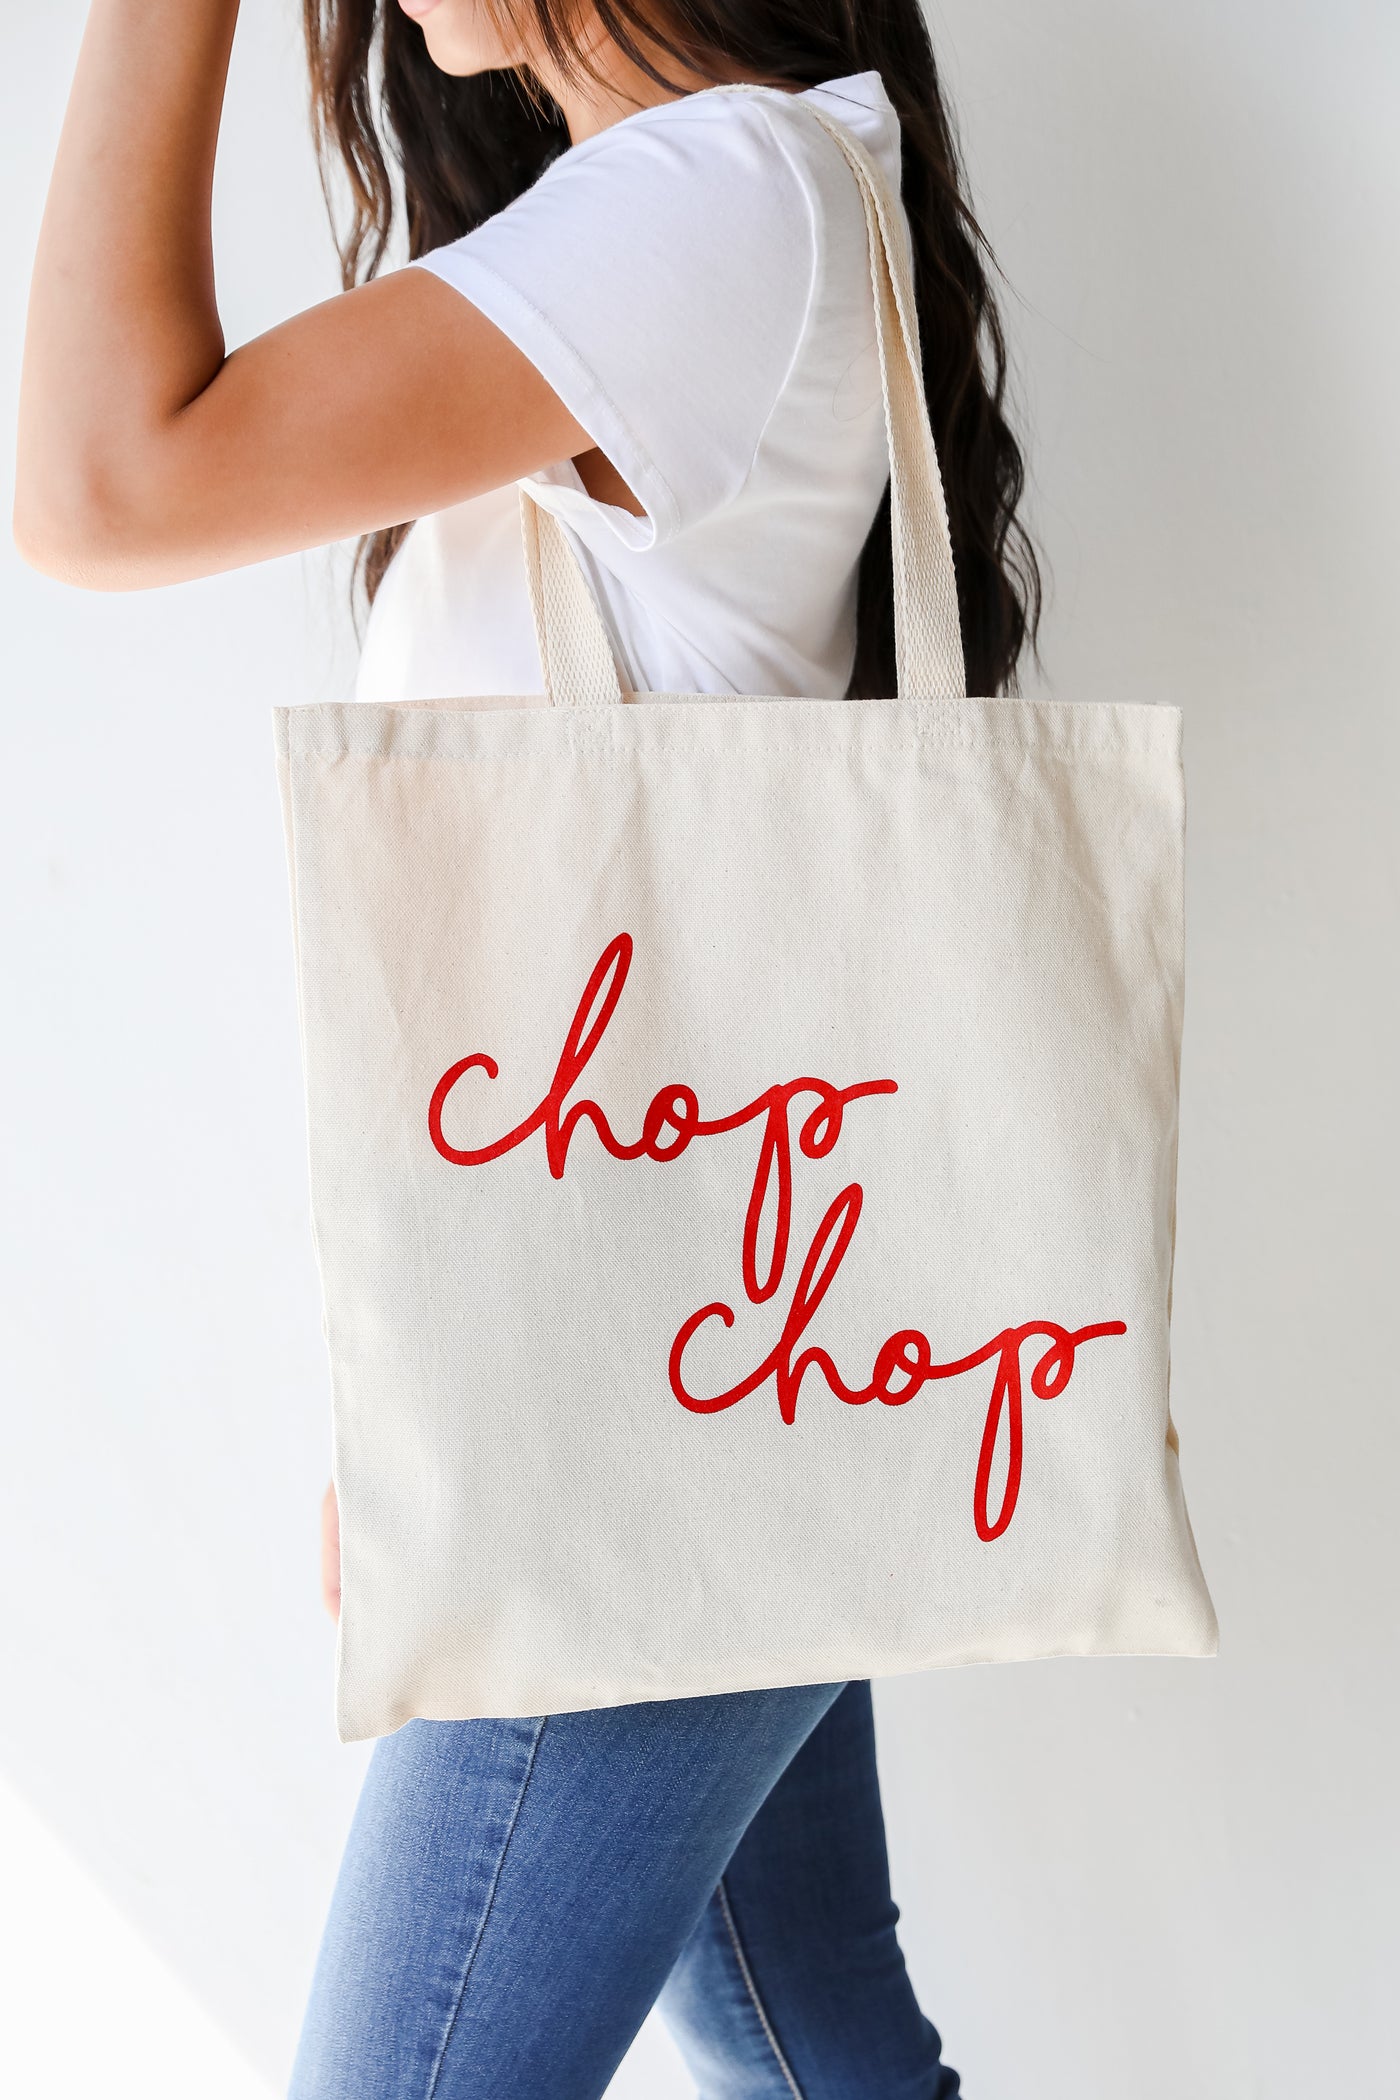 Chop Chop Tote Bag